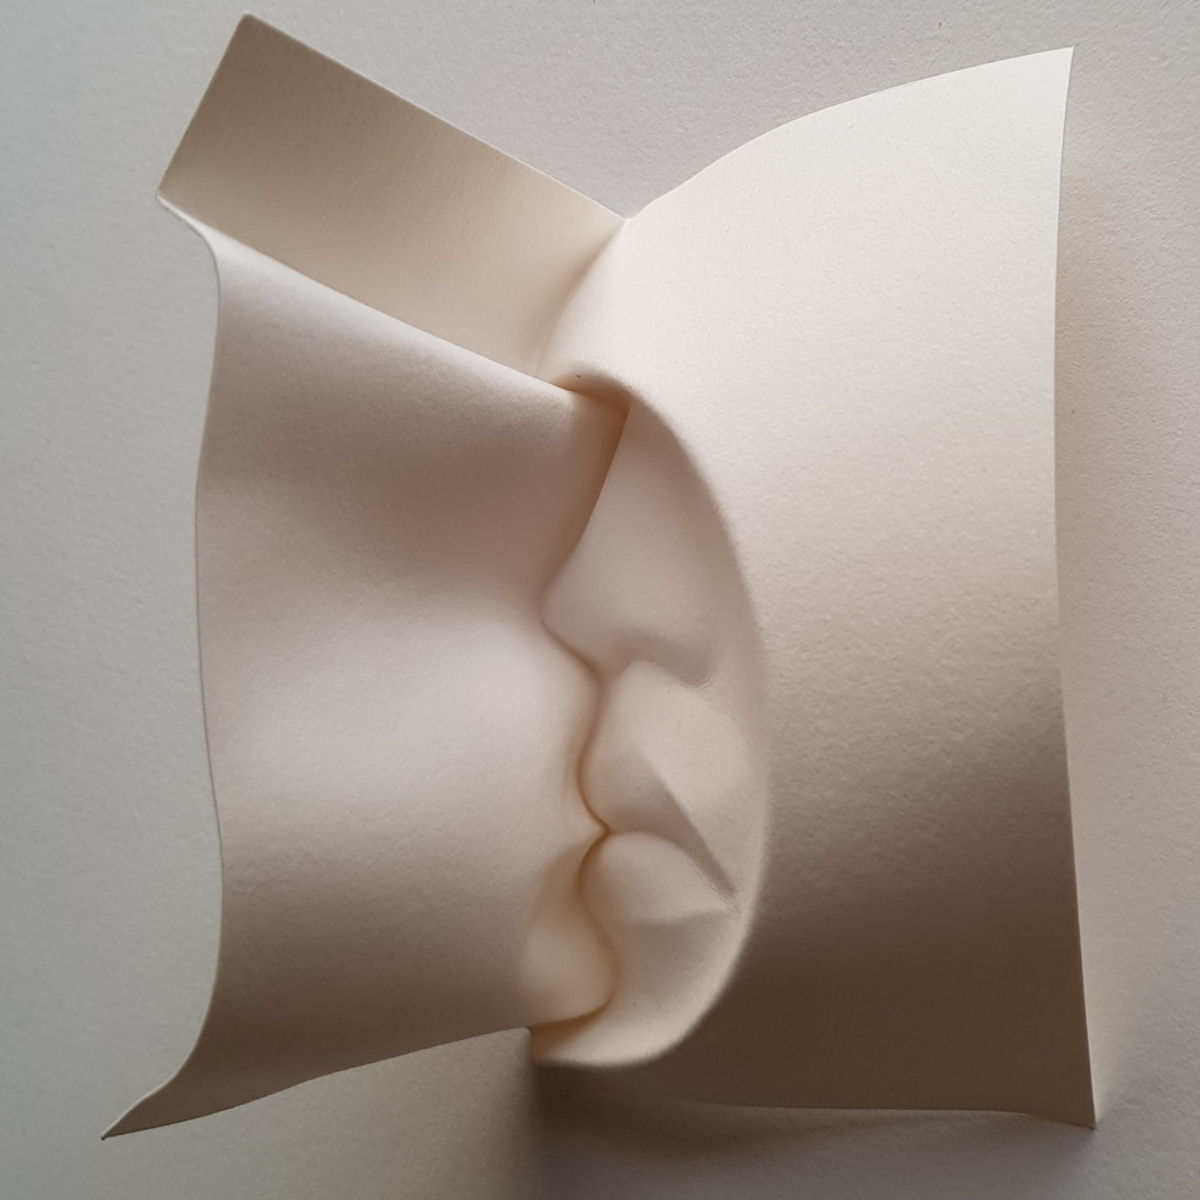 Esculturas sensuais em simples folhas de papel sugerem momentos de intimidade 02